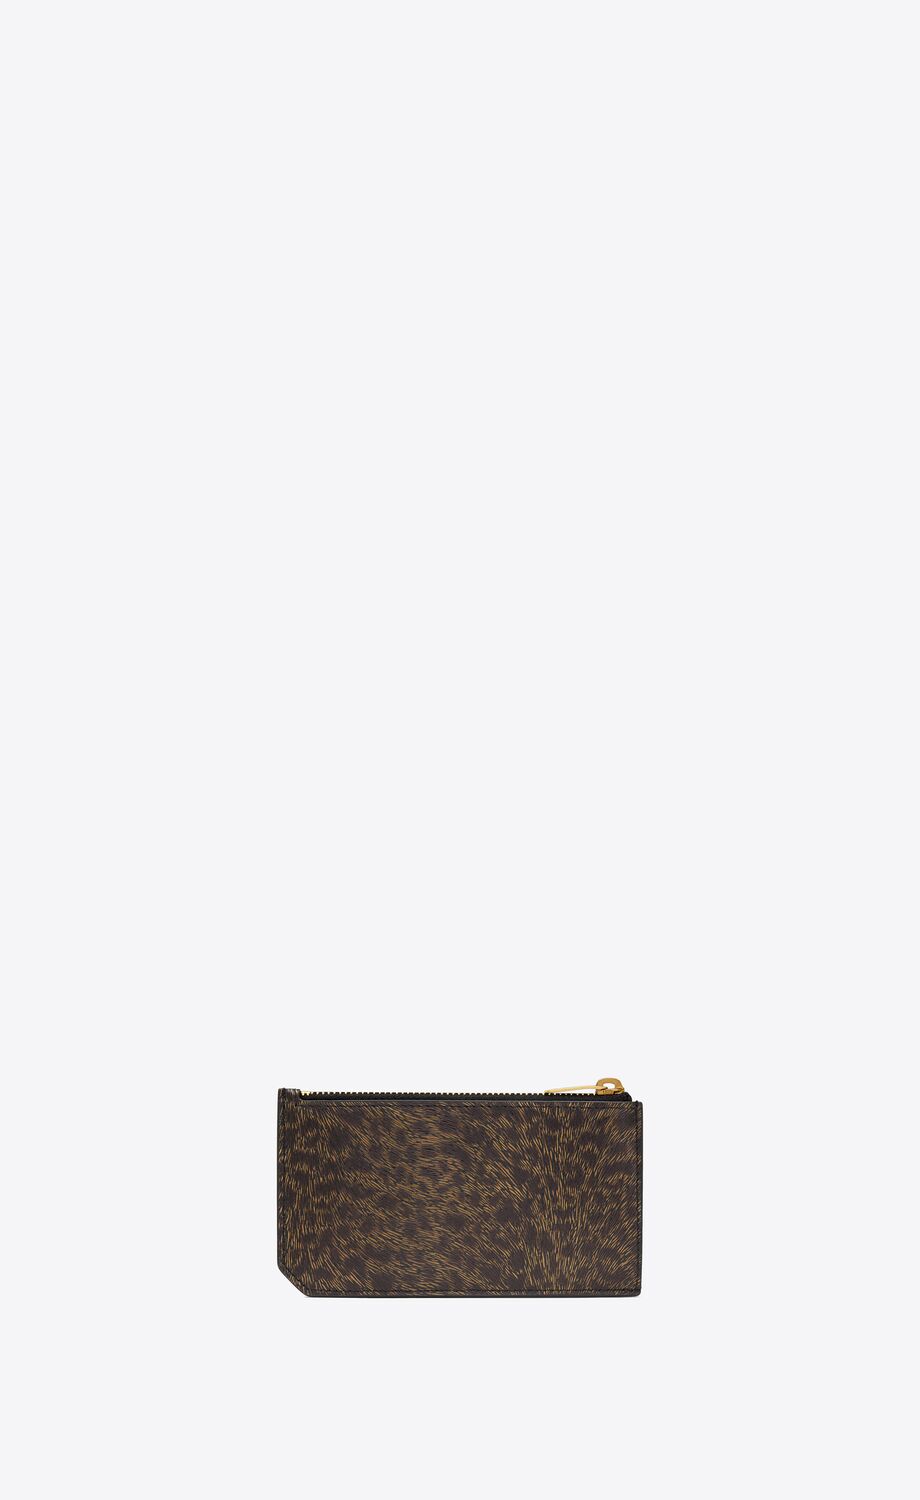 Saint Laurent Paris FRAGMENTS zip card case in leopard-print leather ...